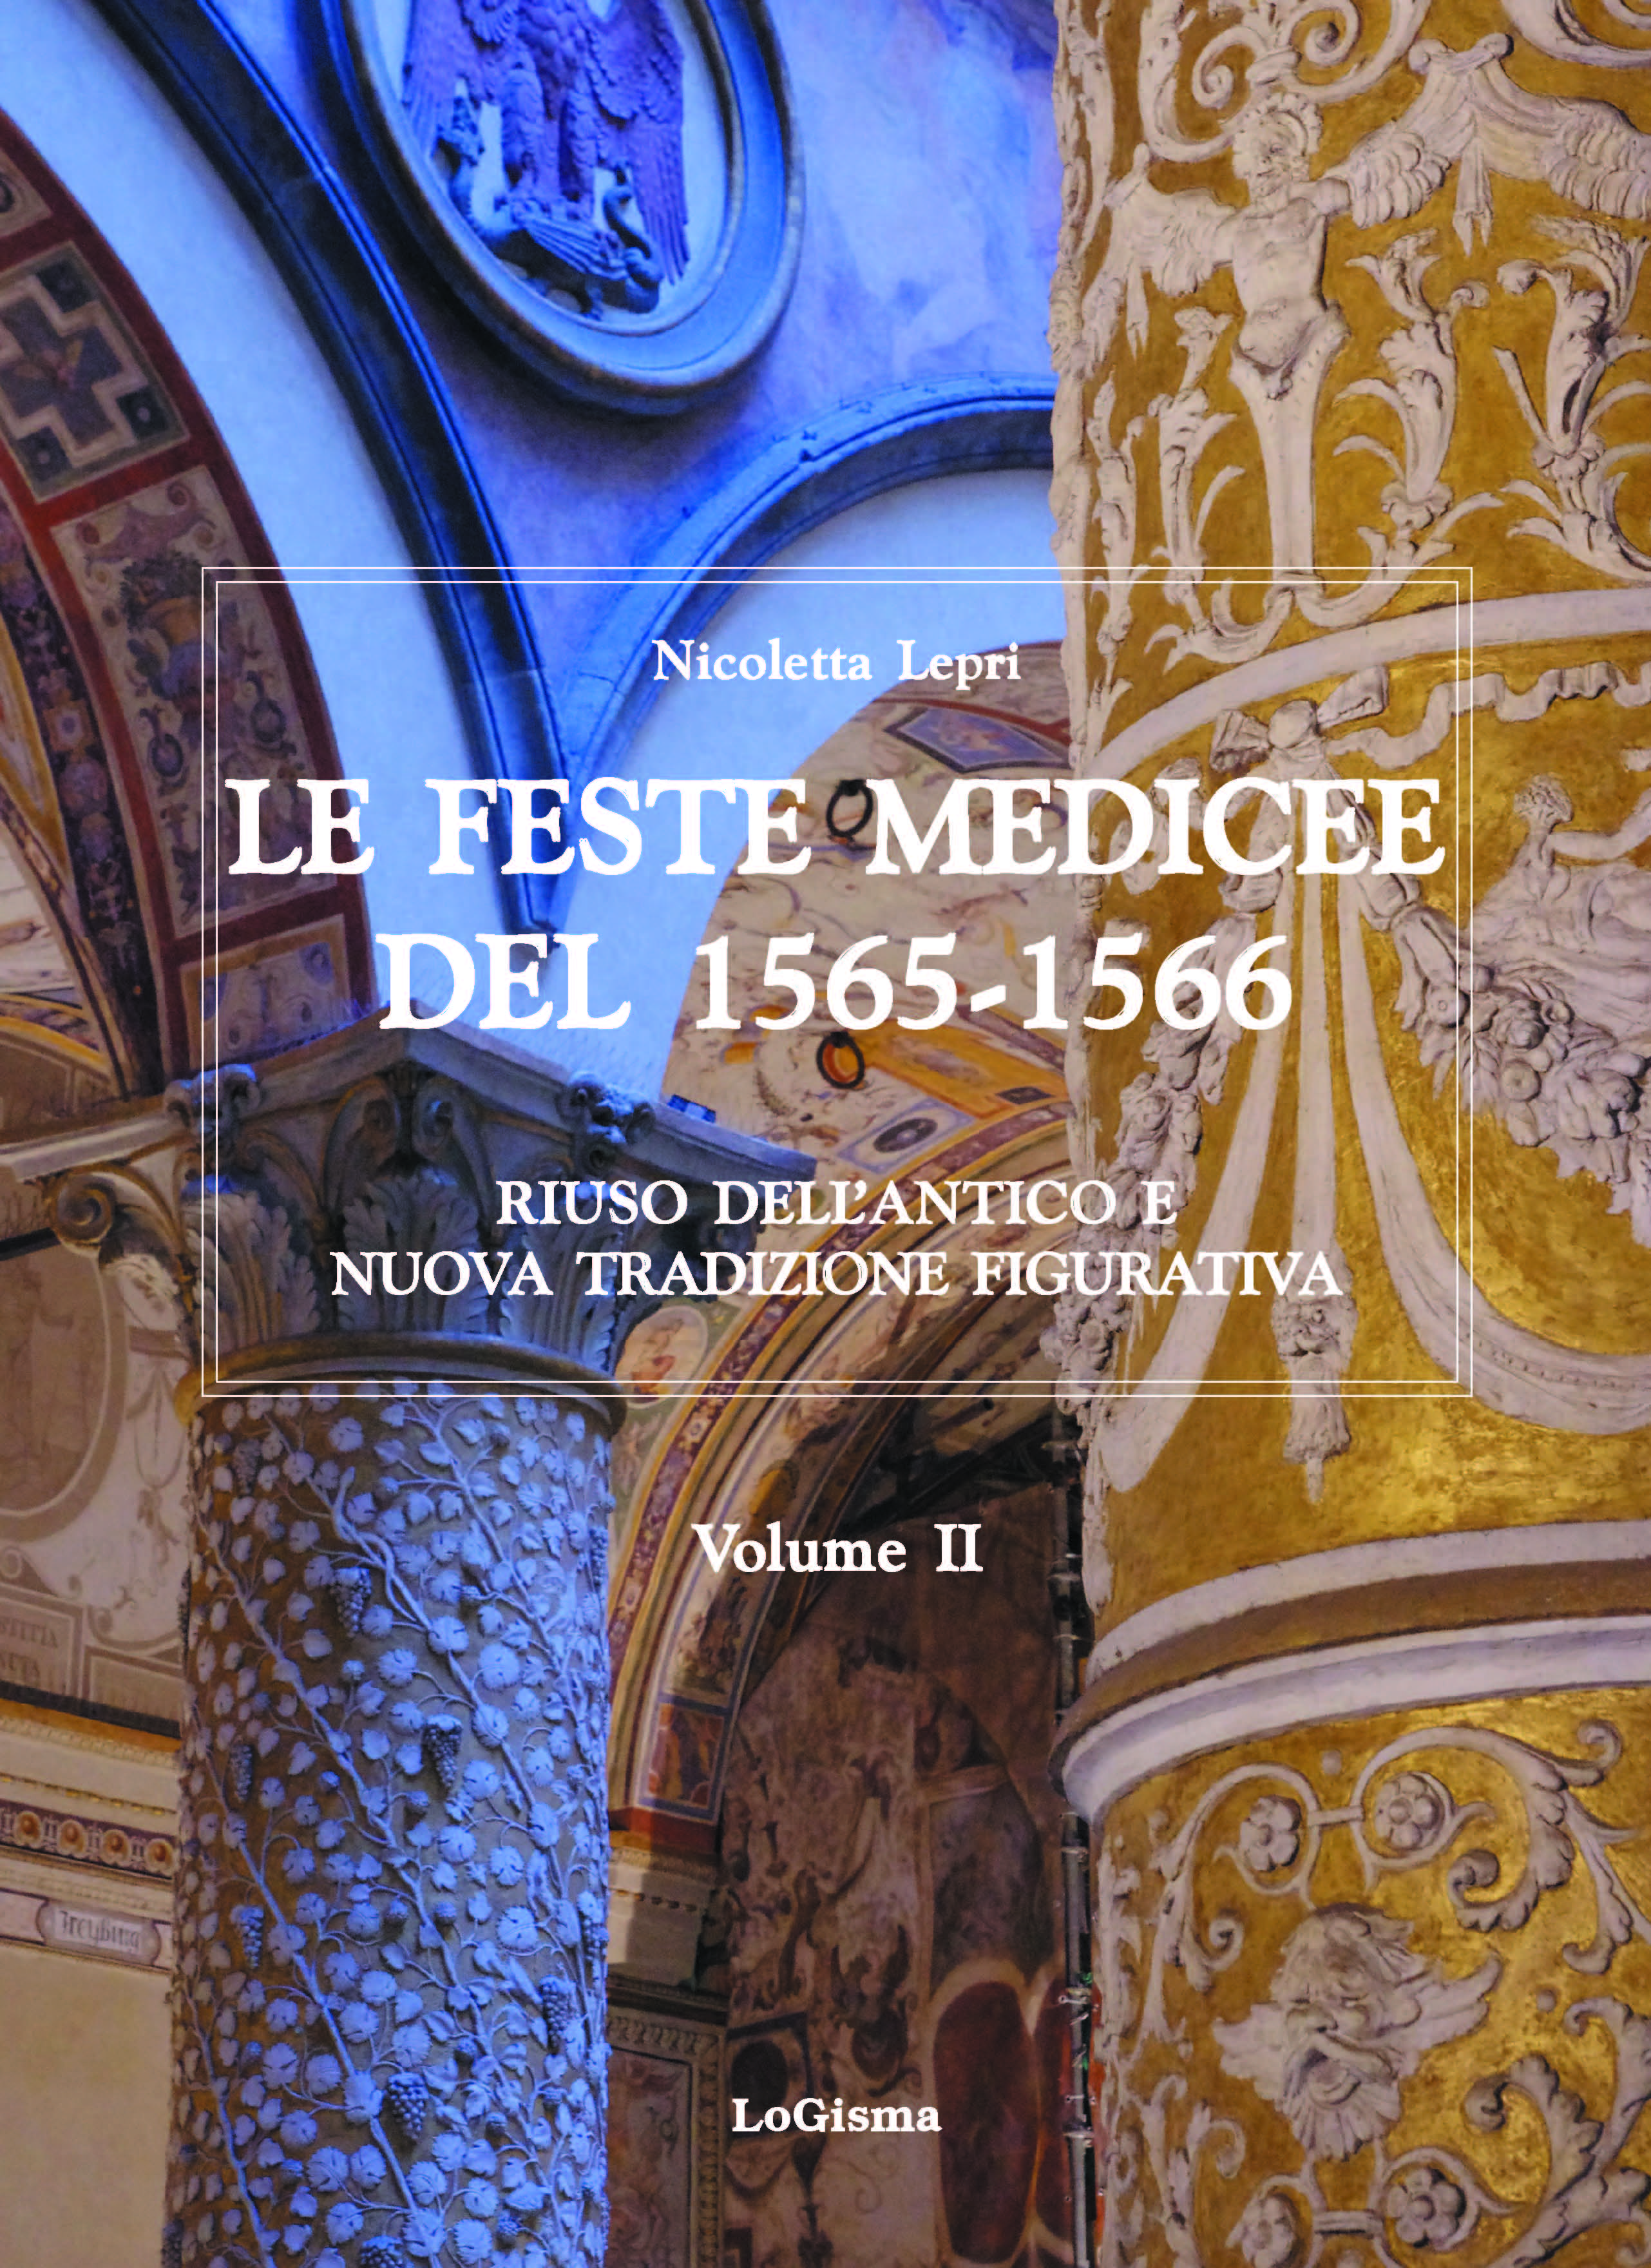 E-book, Le feste medicee del 1565-1566 : riuso dell'antico e nuova tradizione figurativa, Lepri, Nicoletta, 1957-, author, LoGisma editore